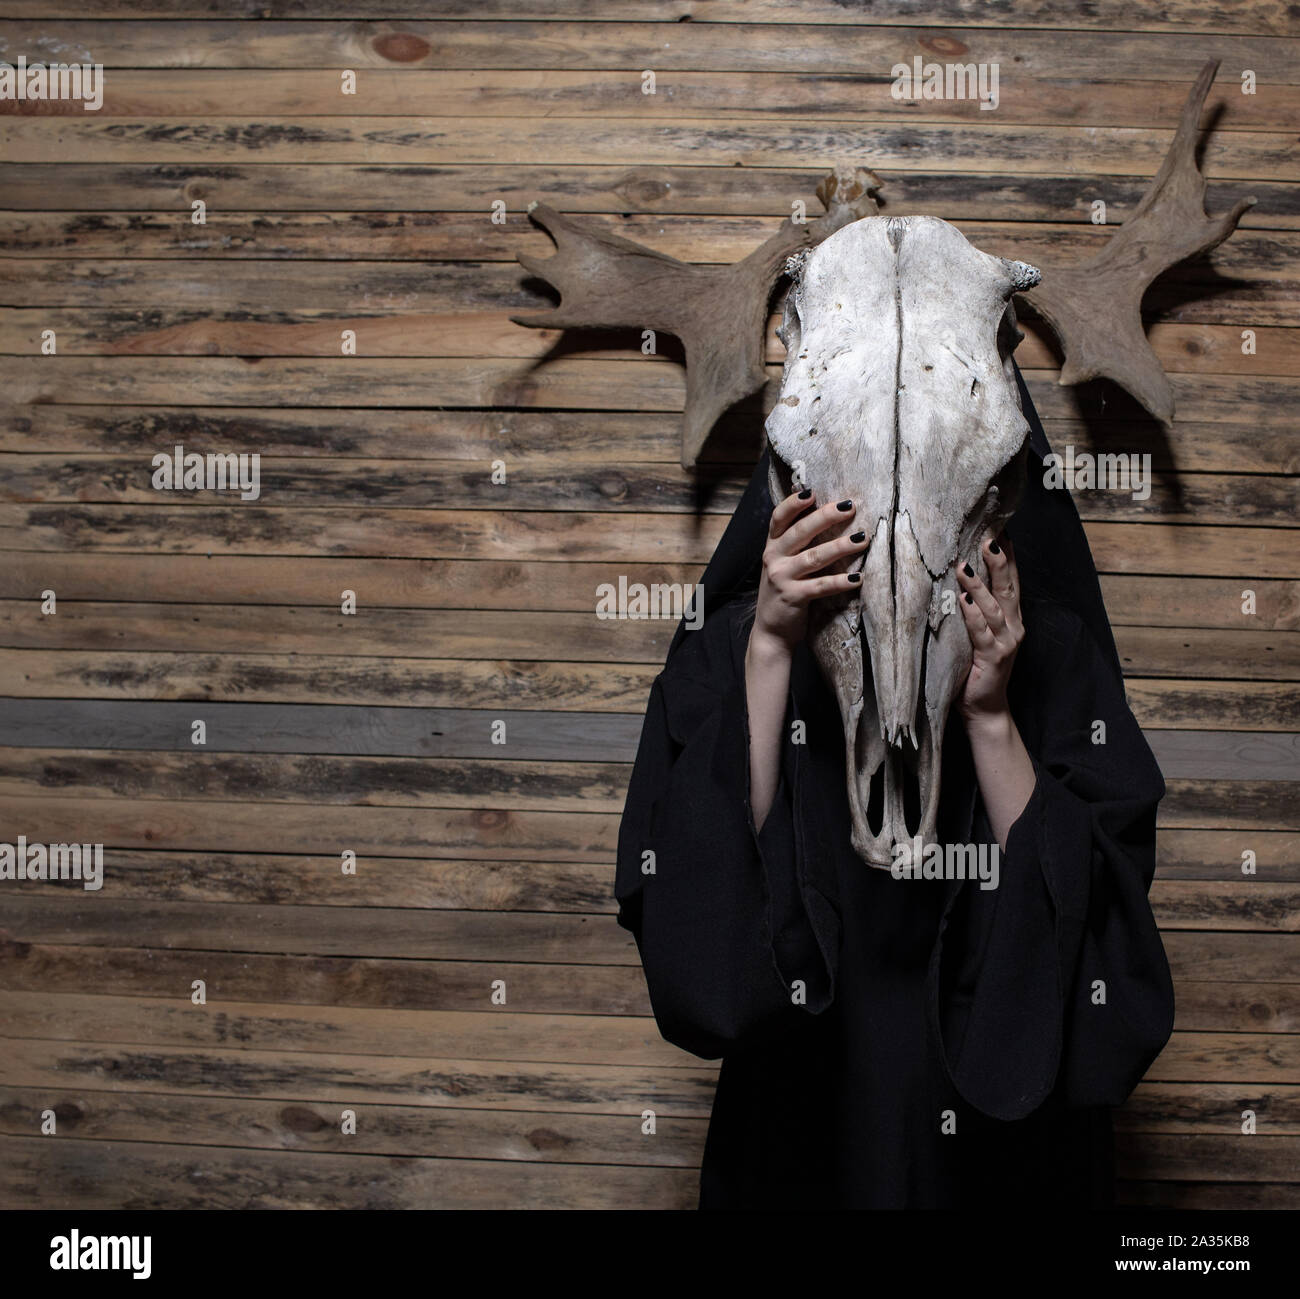 Bruja sosteniendo cráneo de animal parado sobre fondo de madera. Halloween, magia negra concepto ritual místico. Foto de stock